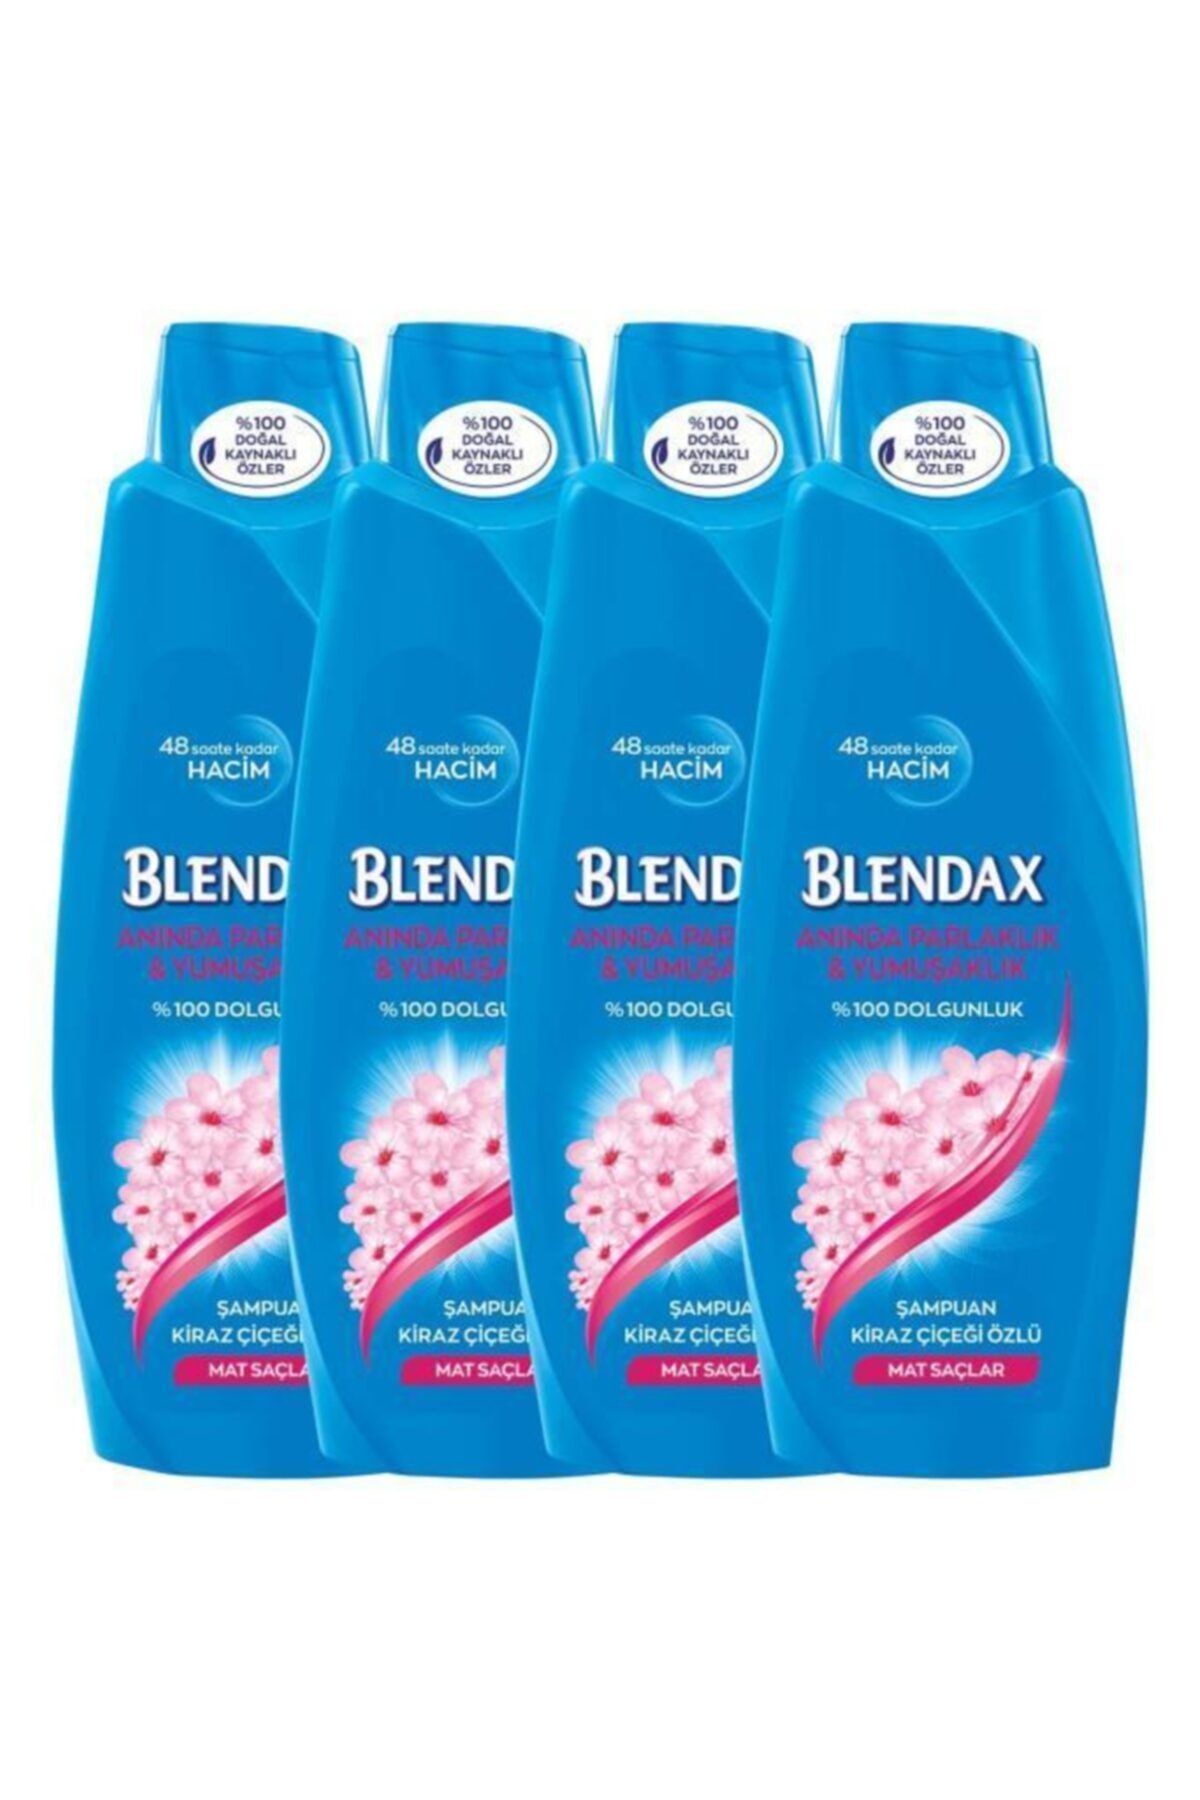 Blendax Anında Parlaklık ve Yumuşaklık Kiraz Çiçeği Özlü Şampuan 500 Ml X 4 Adet